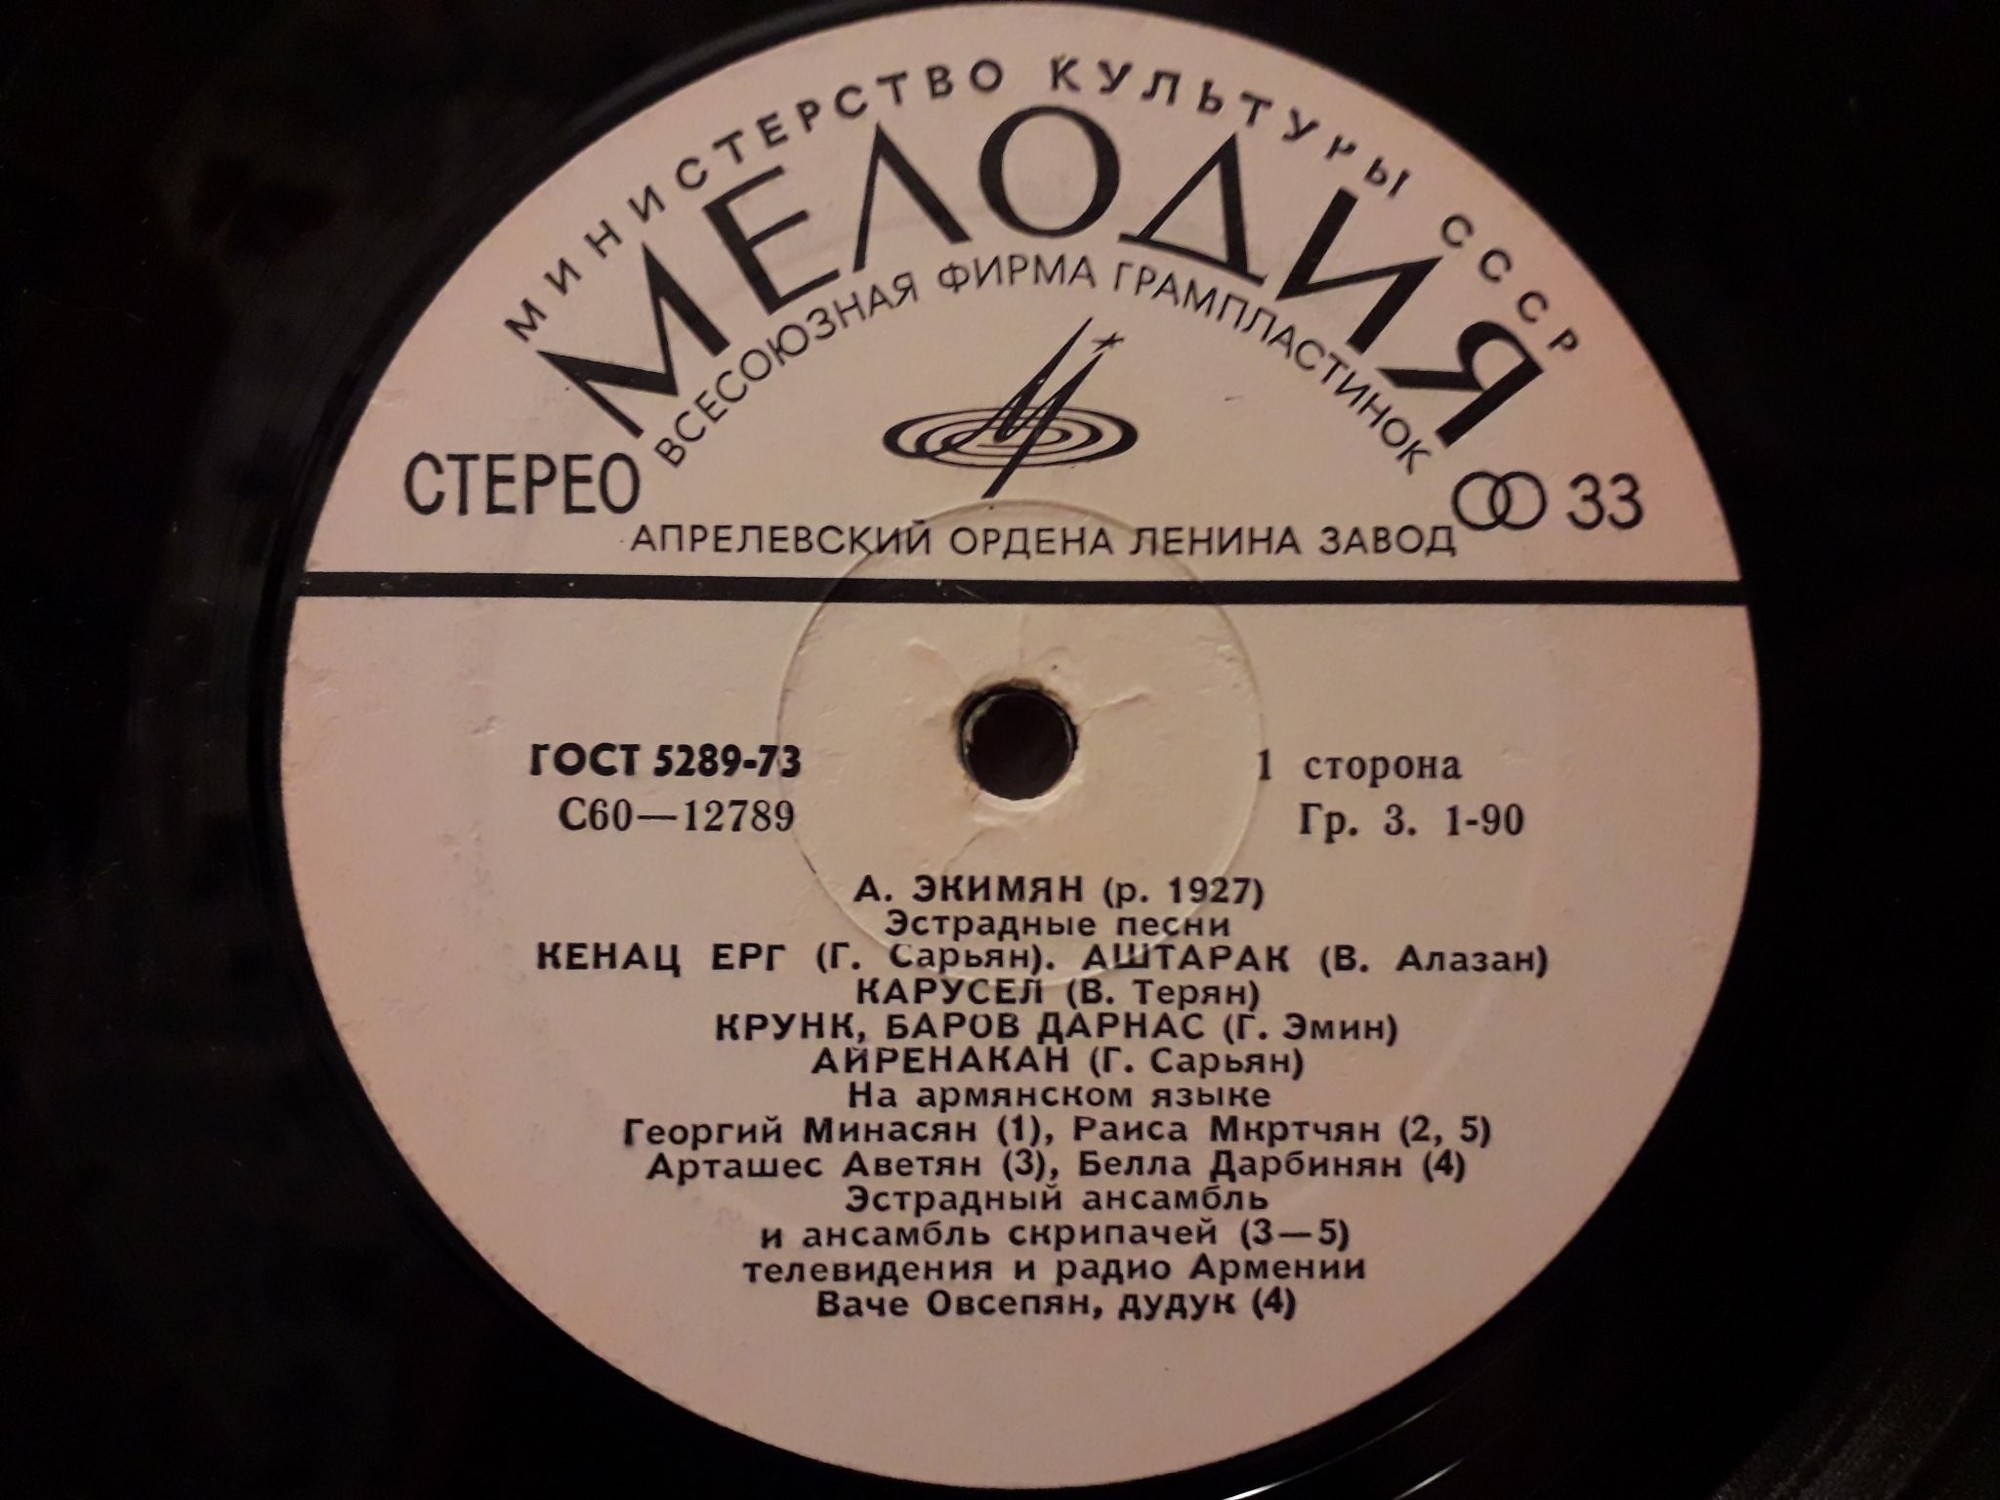 ПЕСНИ А. ЭКИМЯНА (1927)